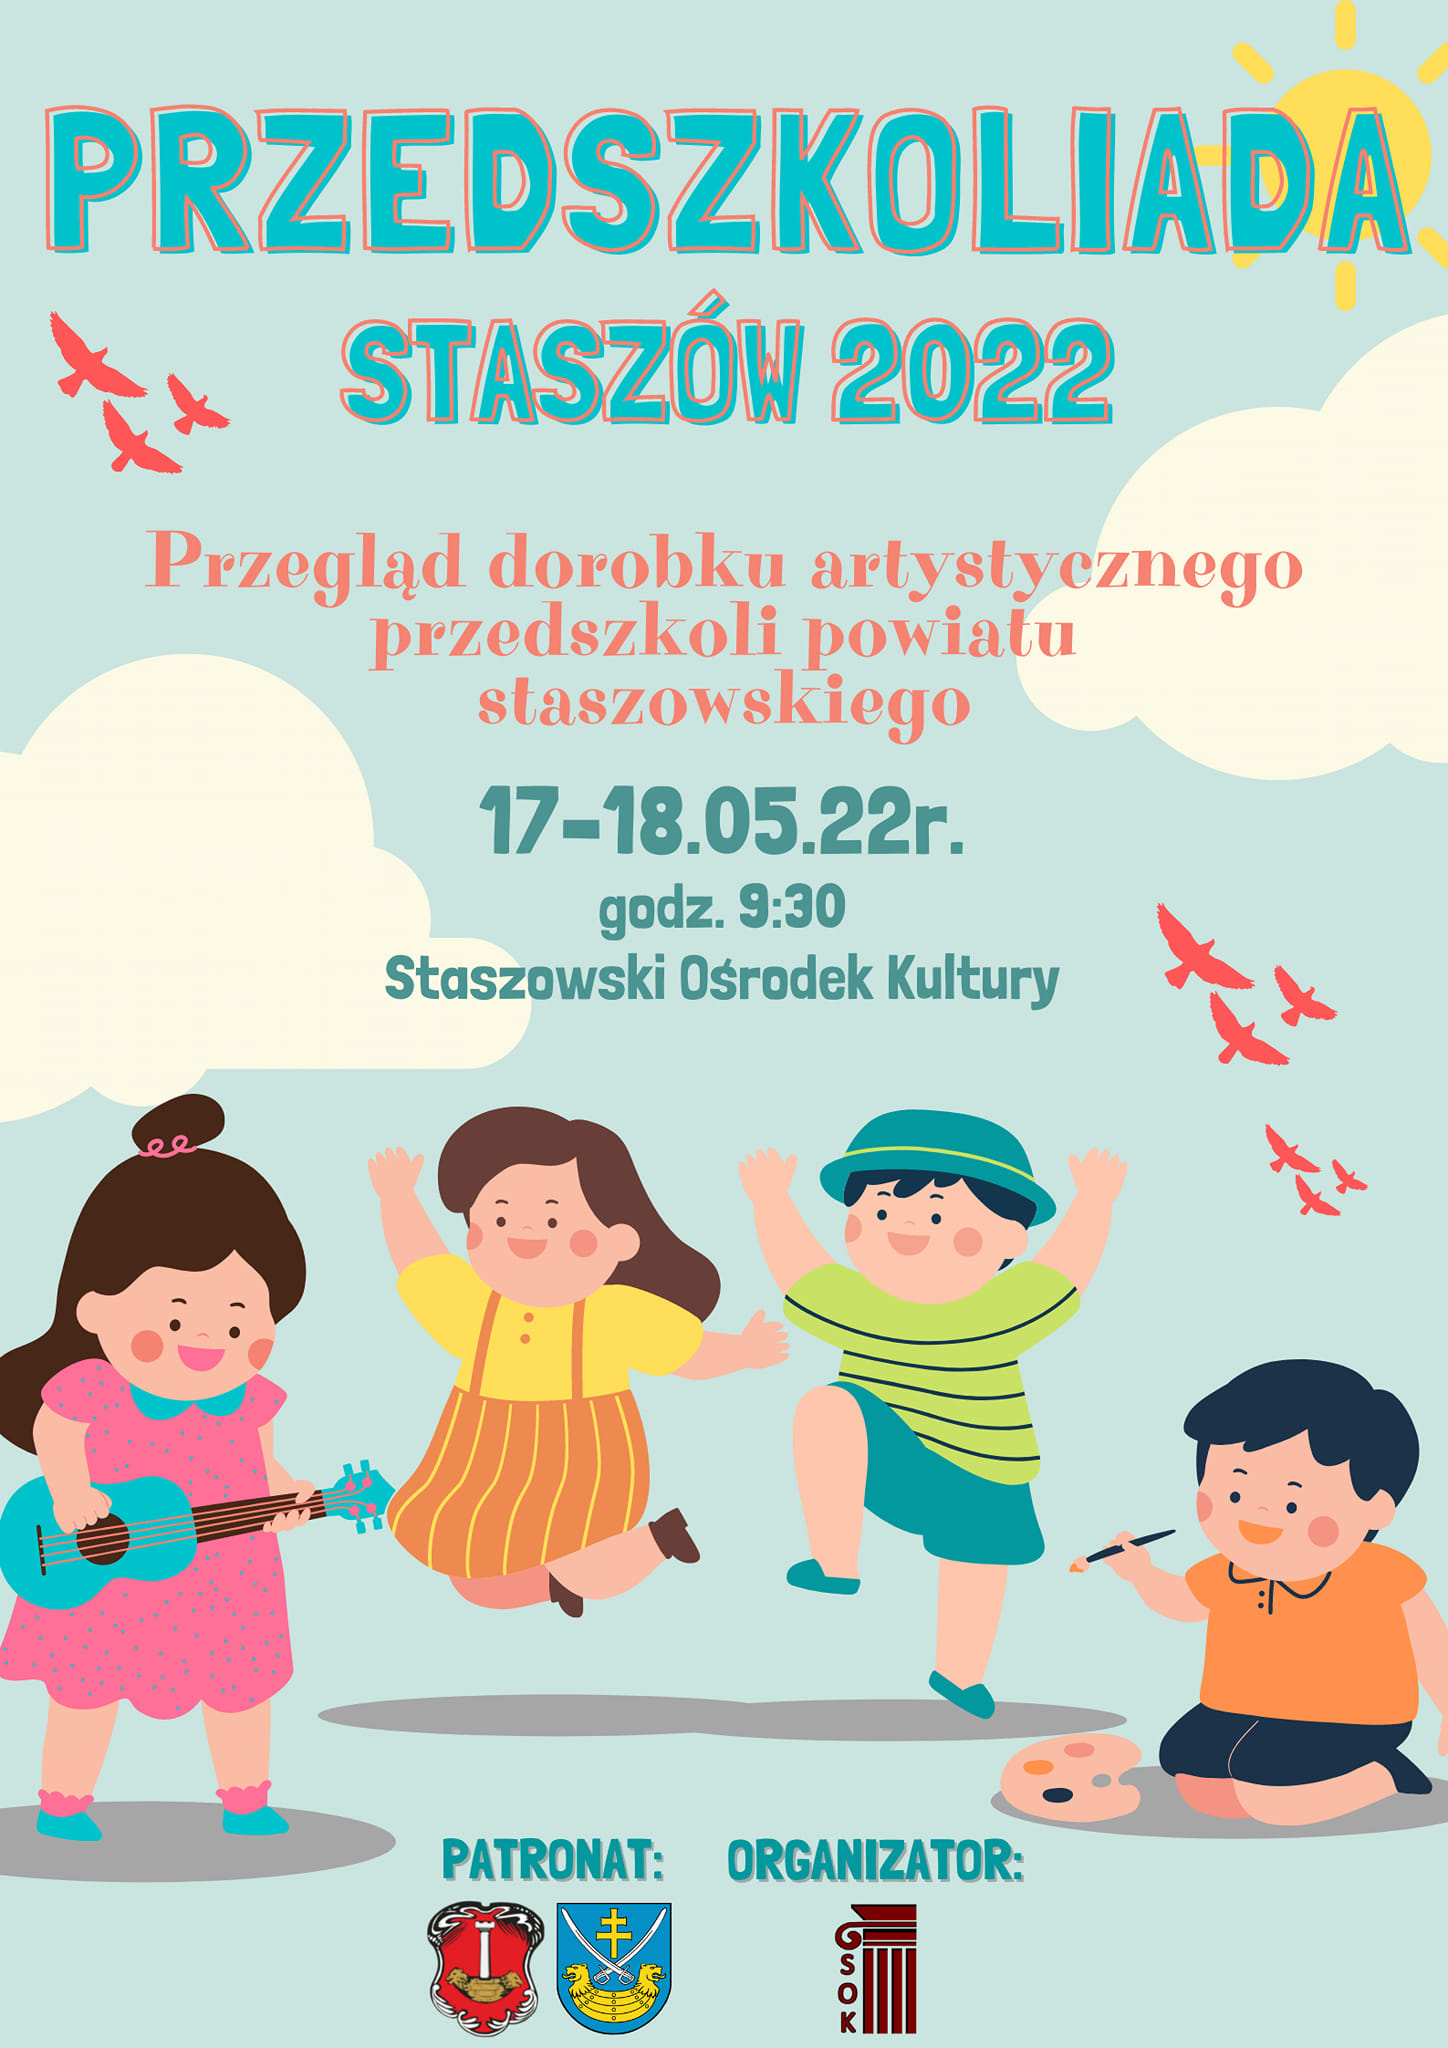 Plakat informacyjny: Przedszkoliada – Staszów 2022  17-18 maja, Staszowski Ośrodek Kultury